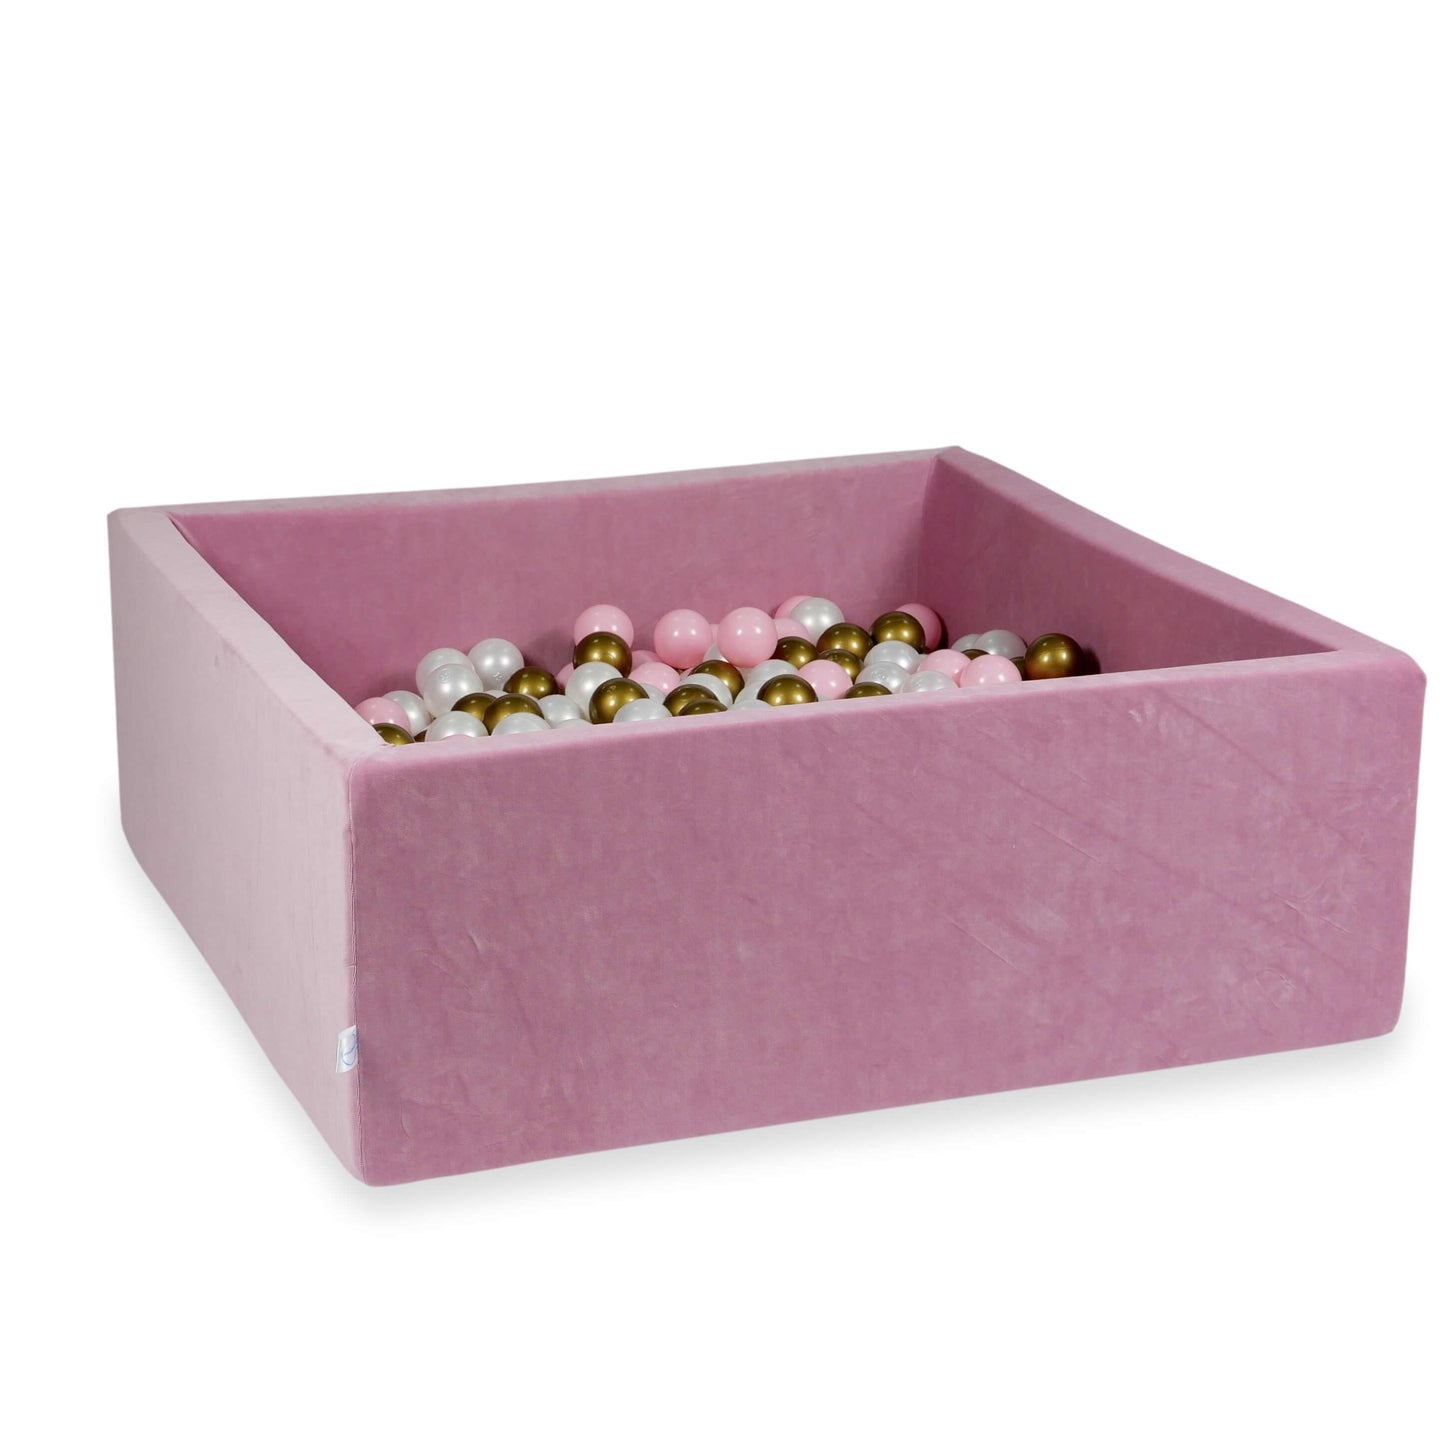 Piscine à Balles 110x110x40 Velvet Soft rose avec balles 600 pcs  (perle, vieil or, rose clair)